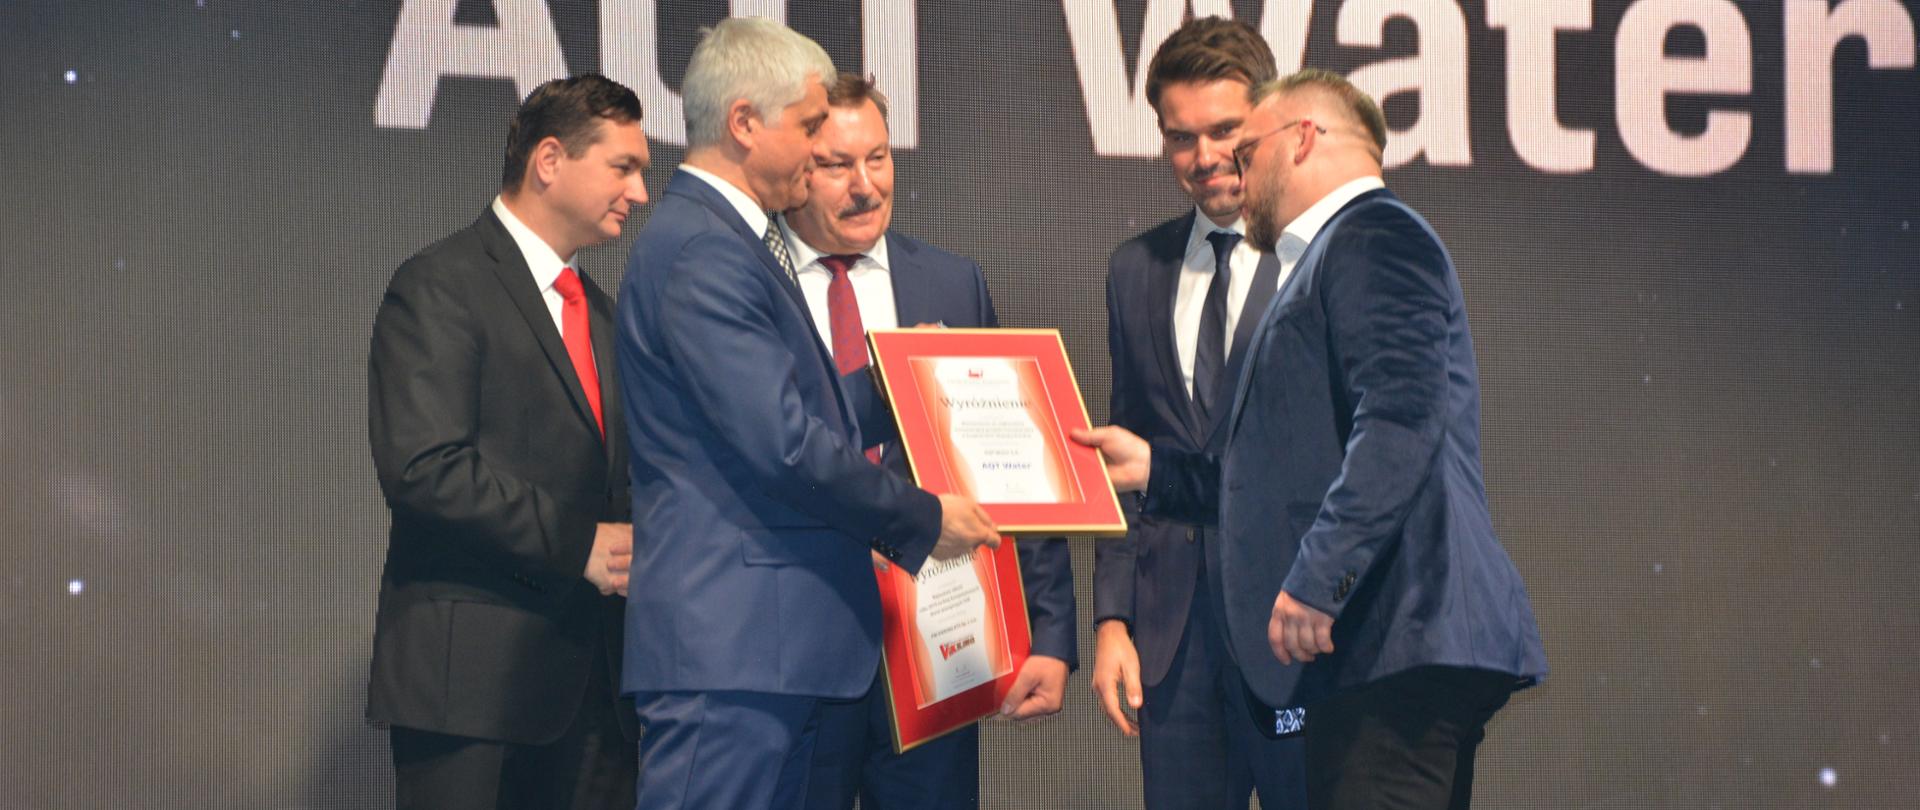 Wielka Gala Biznesu Polskiego Klastra Budowlanego